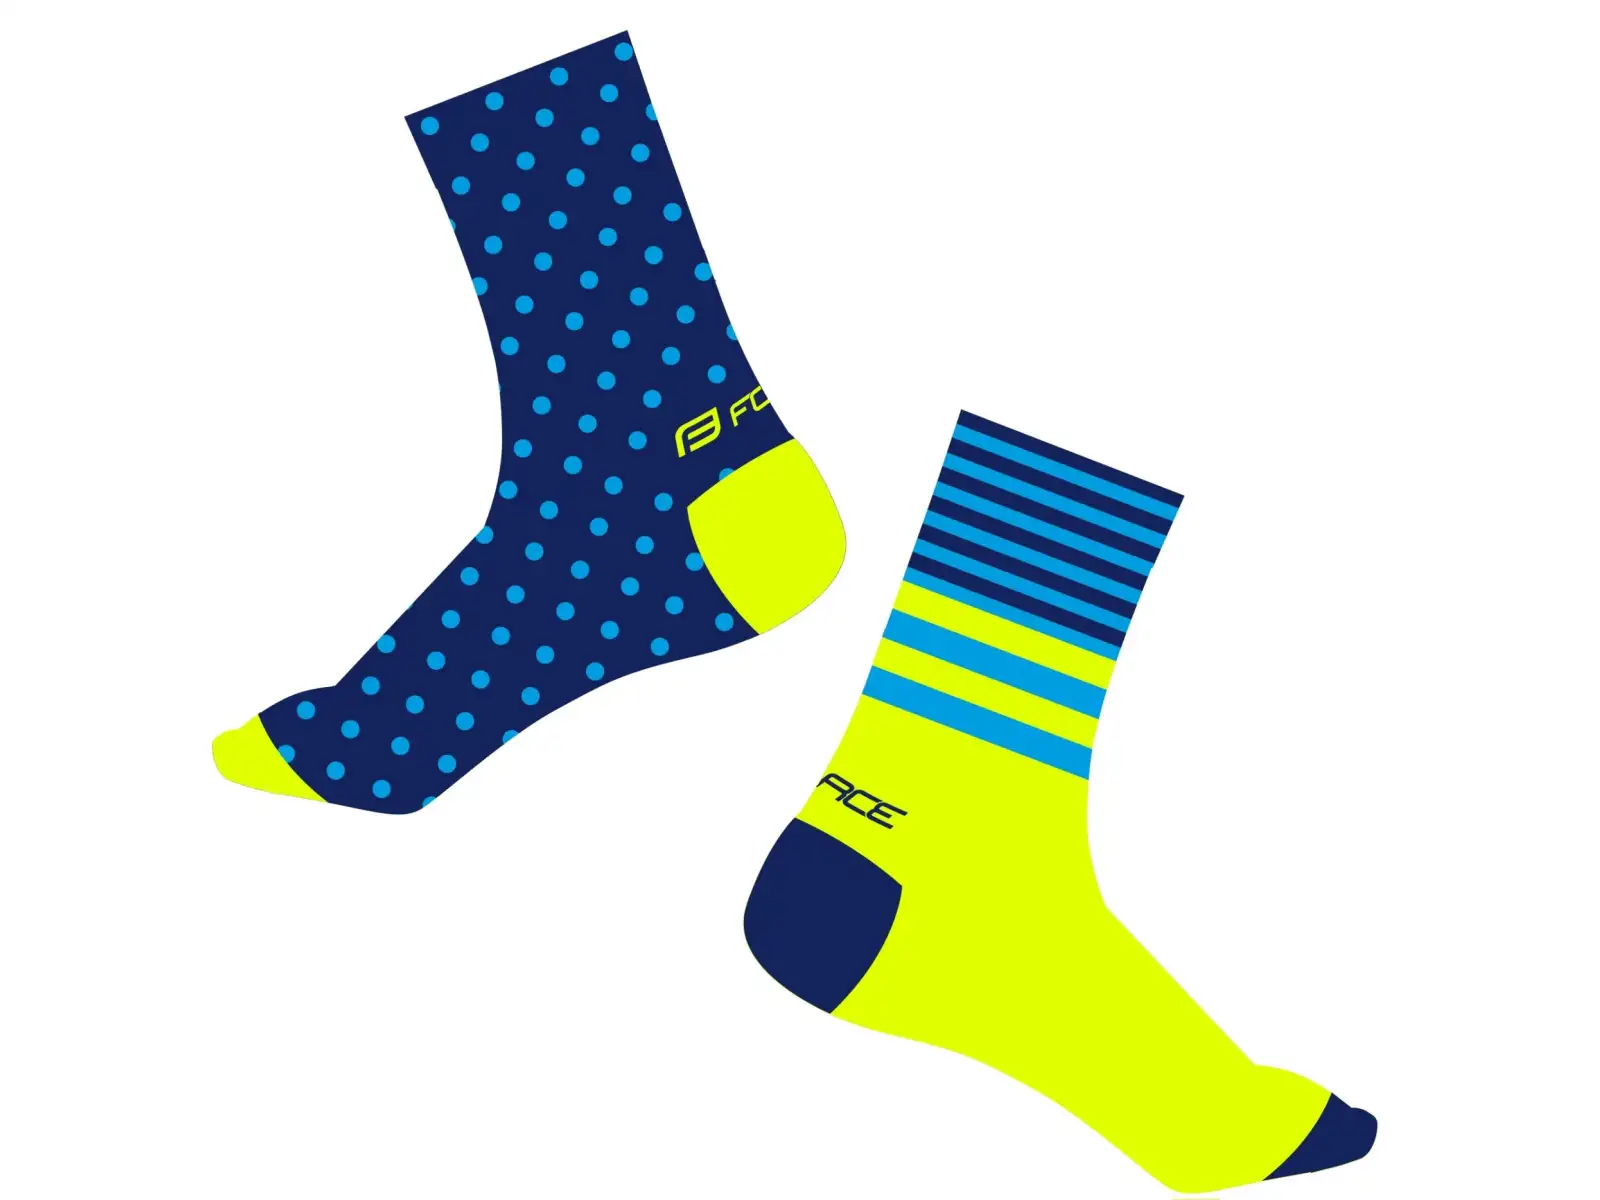 Ponožky Force Spot modré/fluo